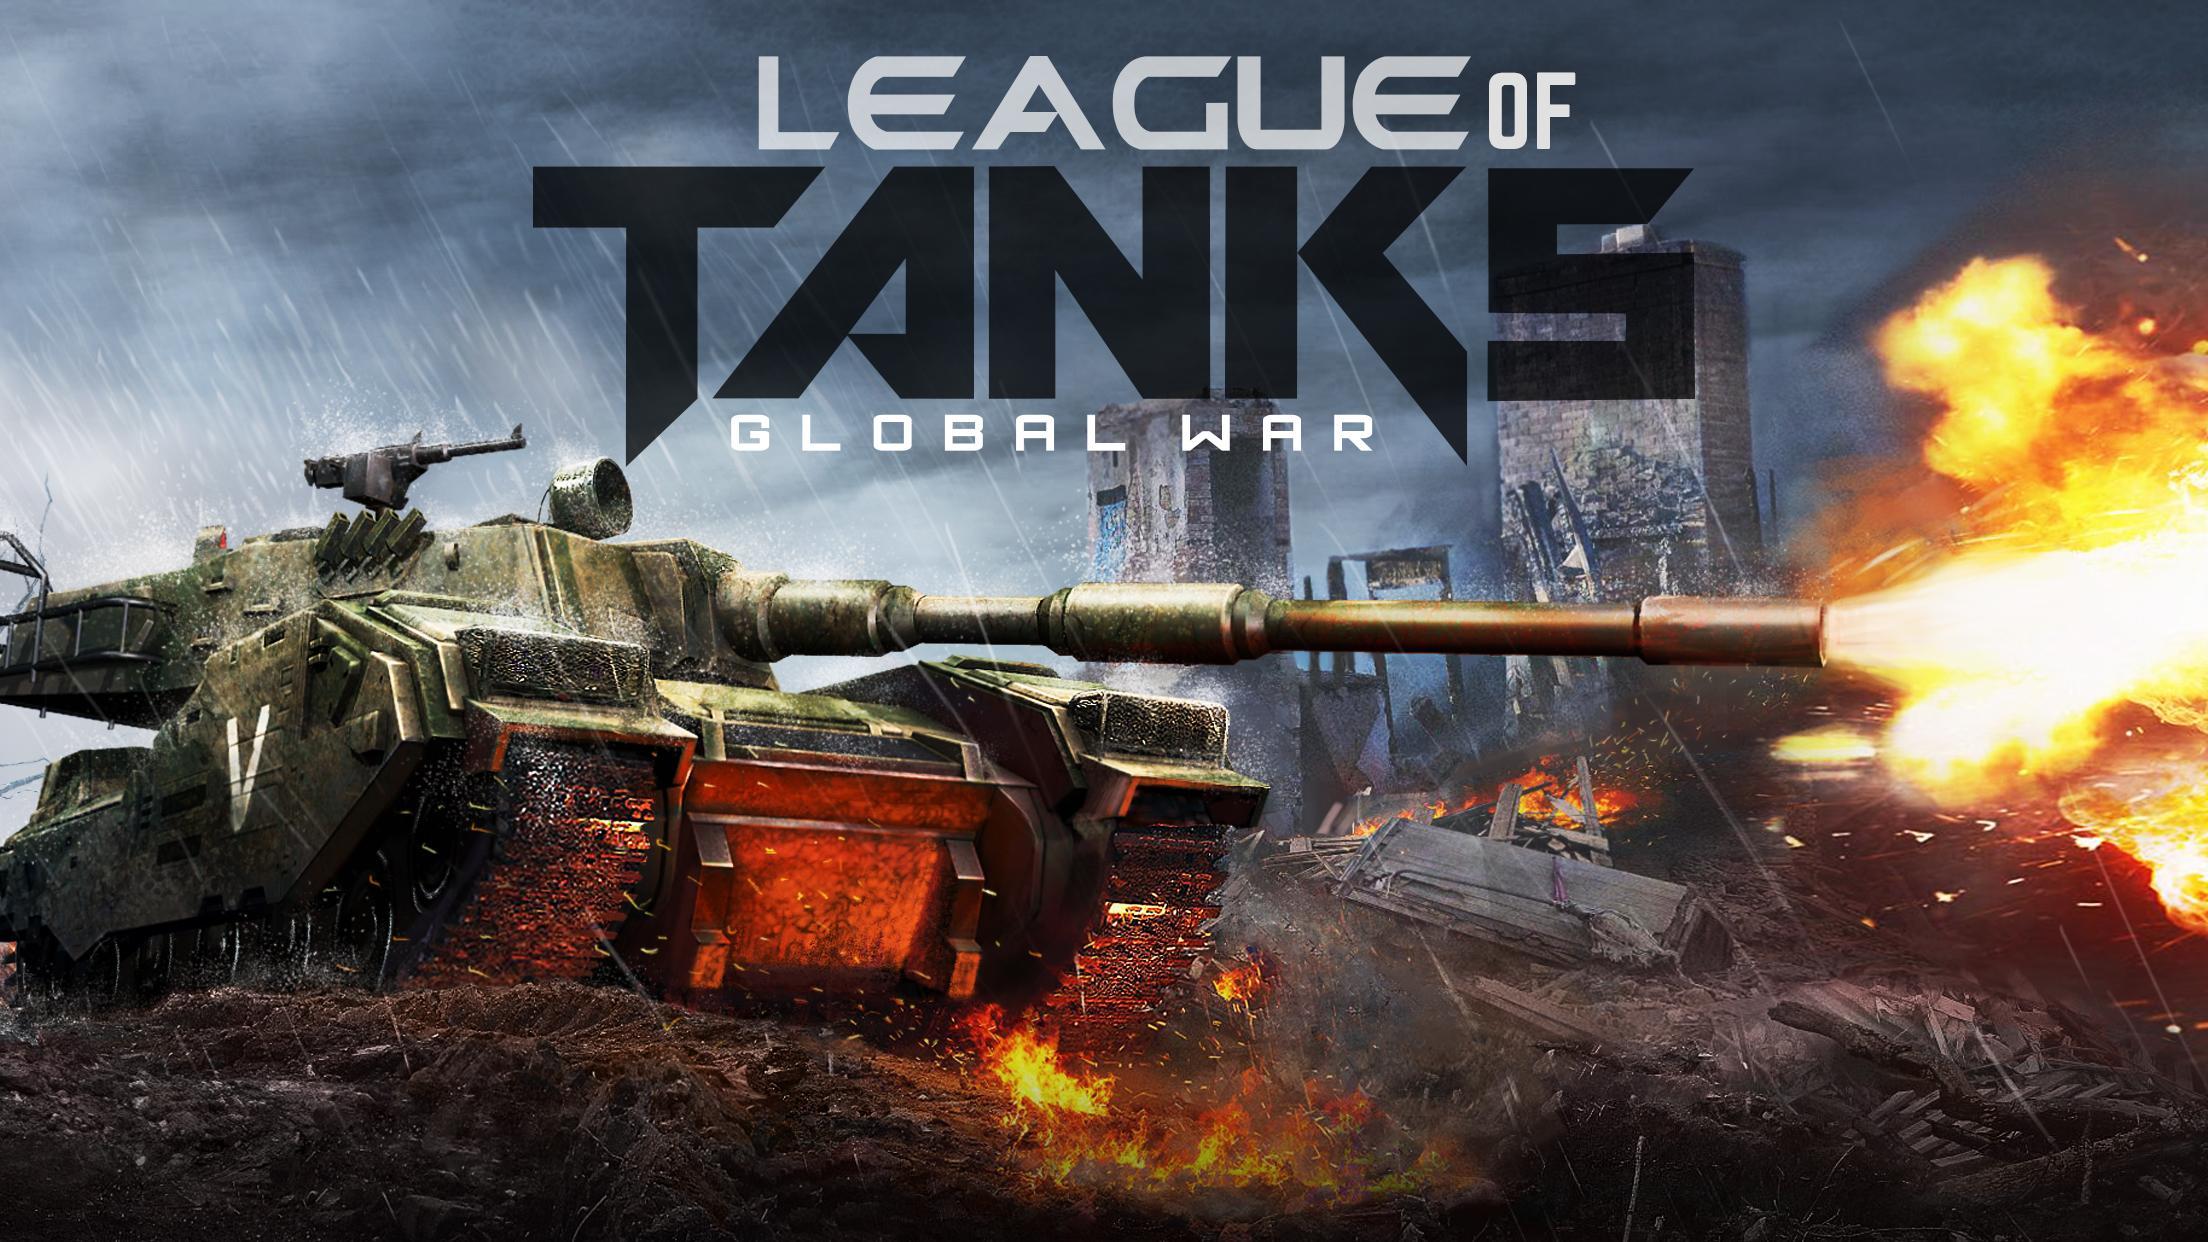 Screenshot 1 of League of Tanks - Global War 2.8.1